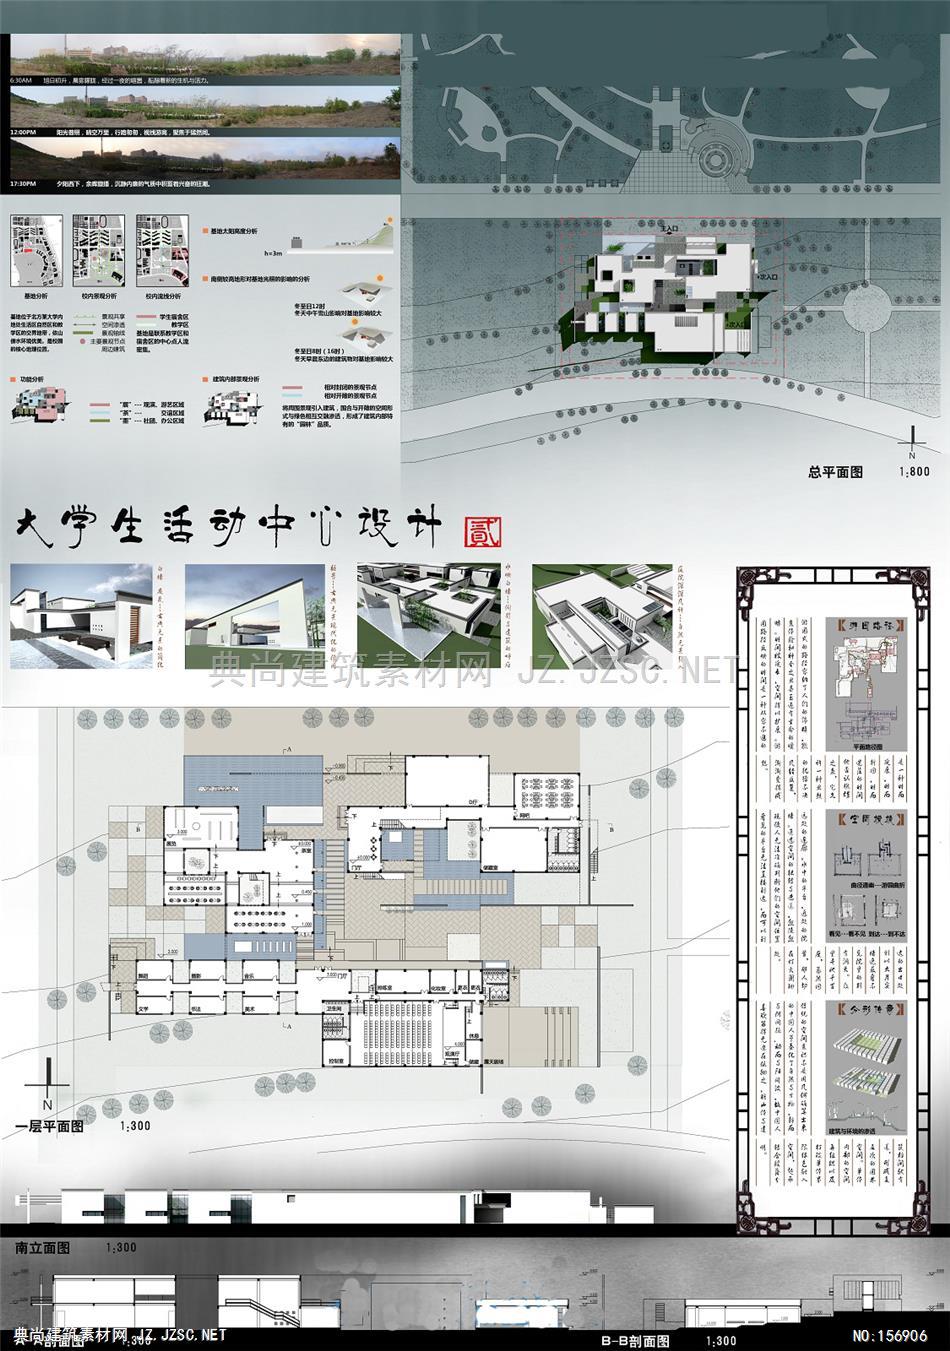 4-活动中心(排版)jpg图片 建筑方案设计jpg图片